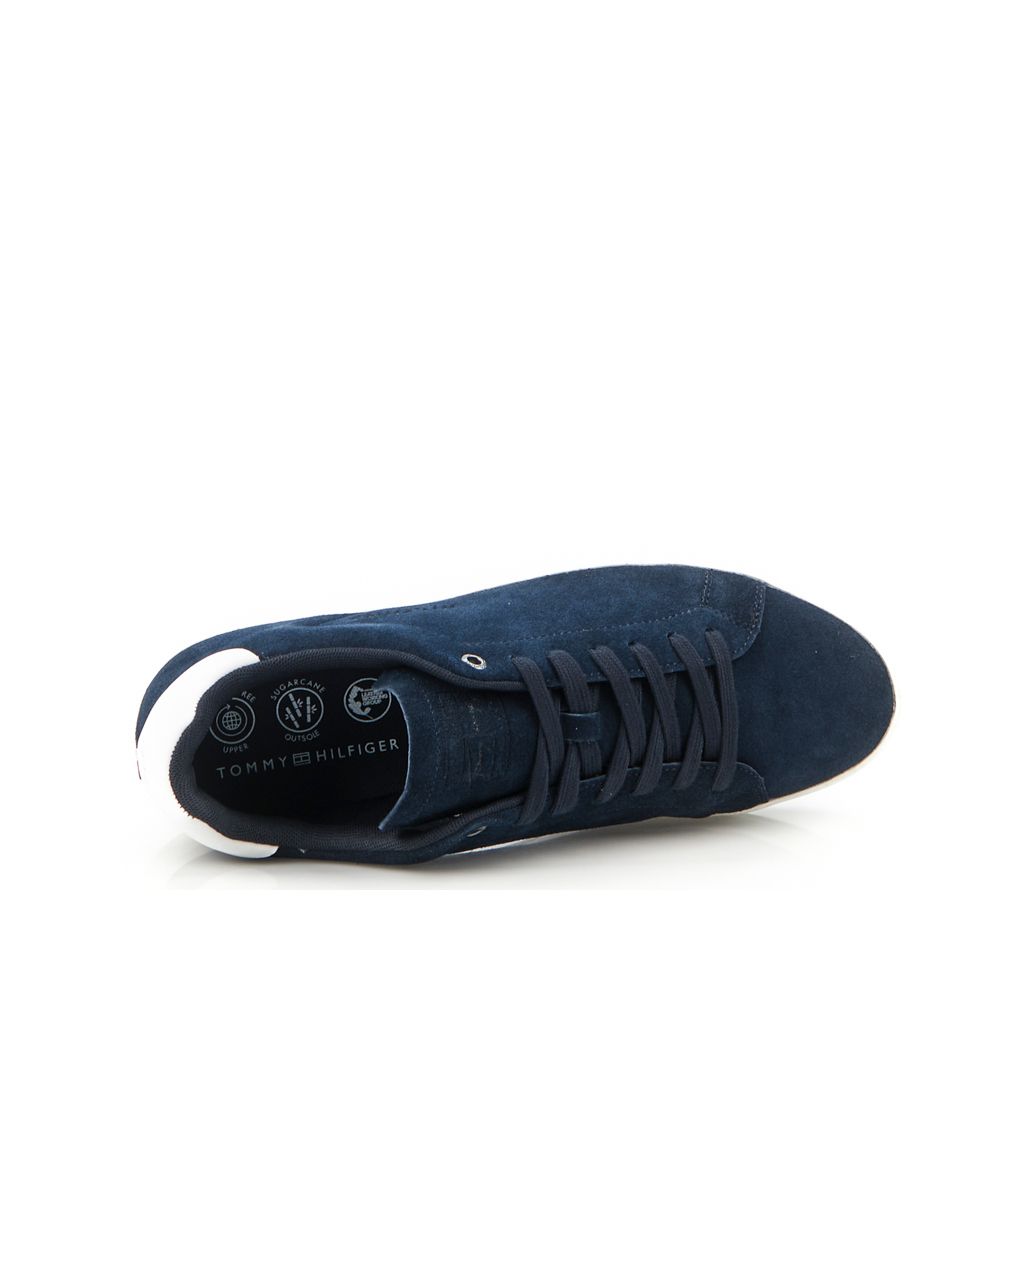 Tommy Hilfiger Menswear Sneakers Donker blauw 074132-001-40